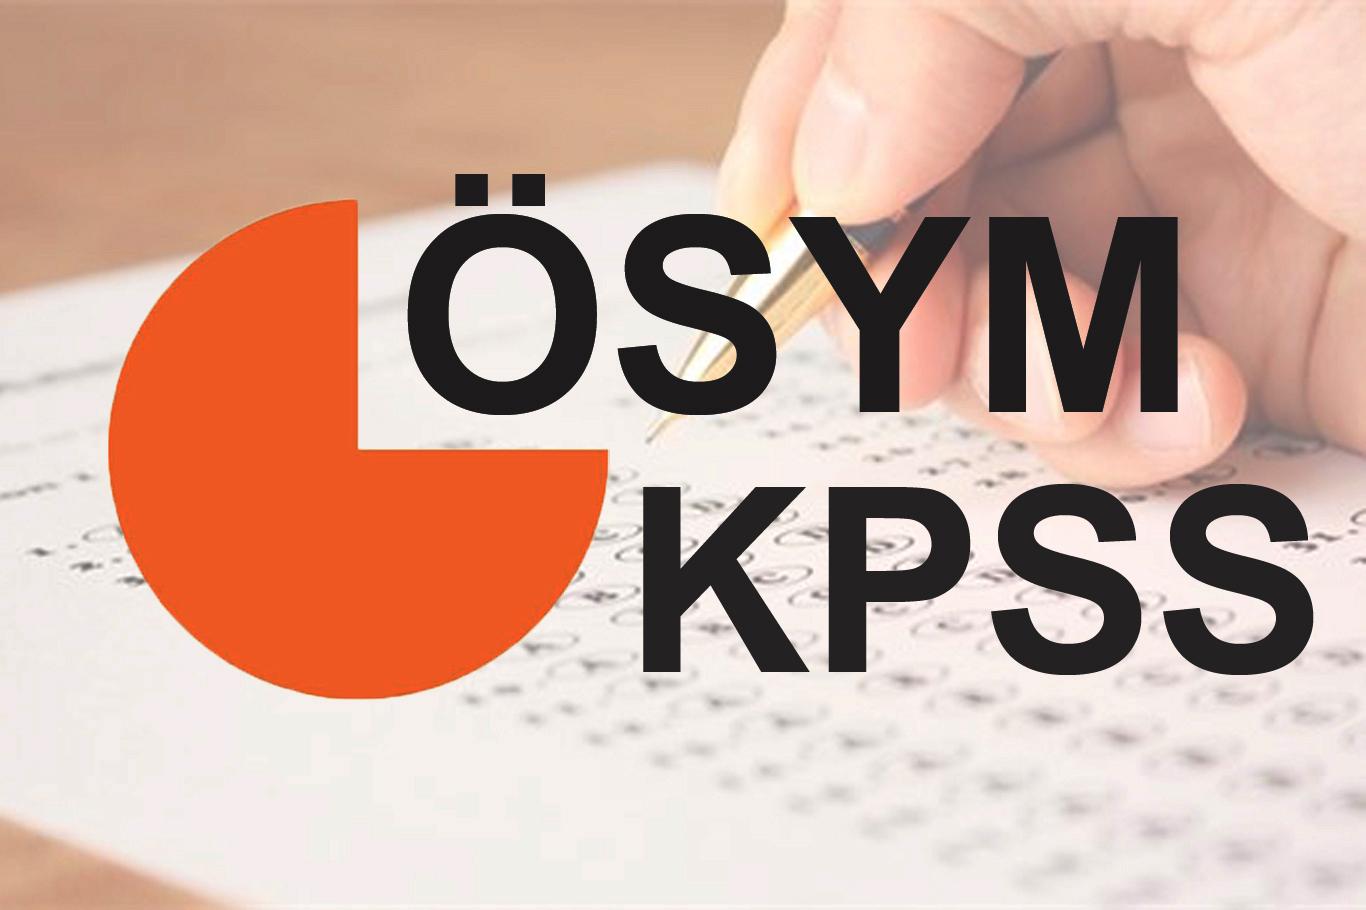 KPSS Ortaöğretim başvuruları başladı